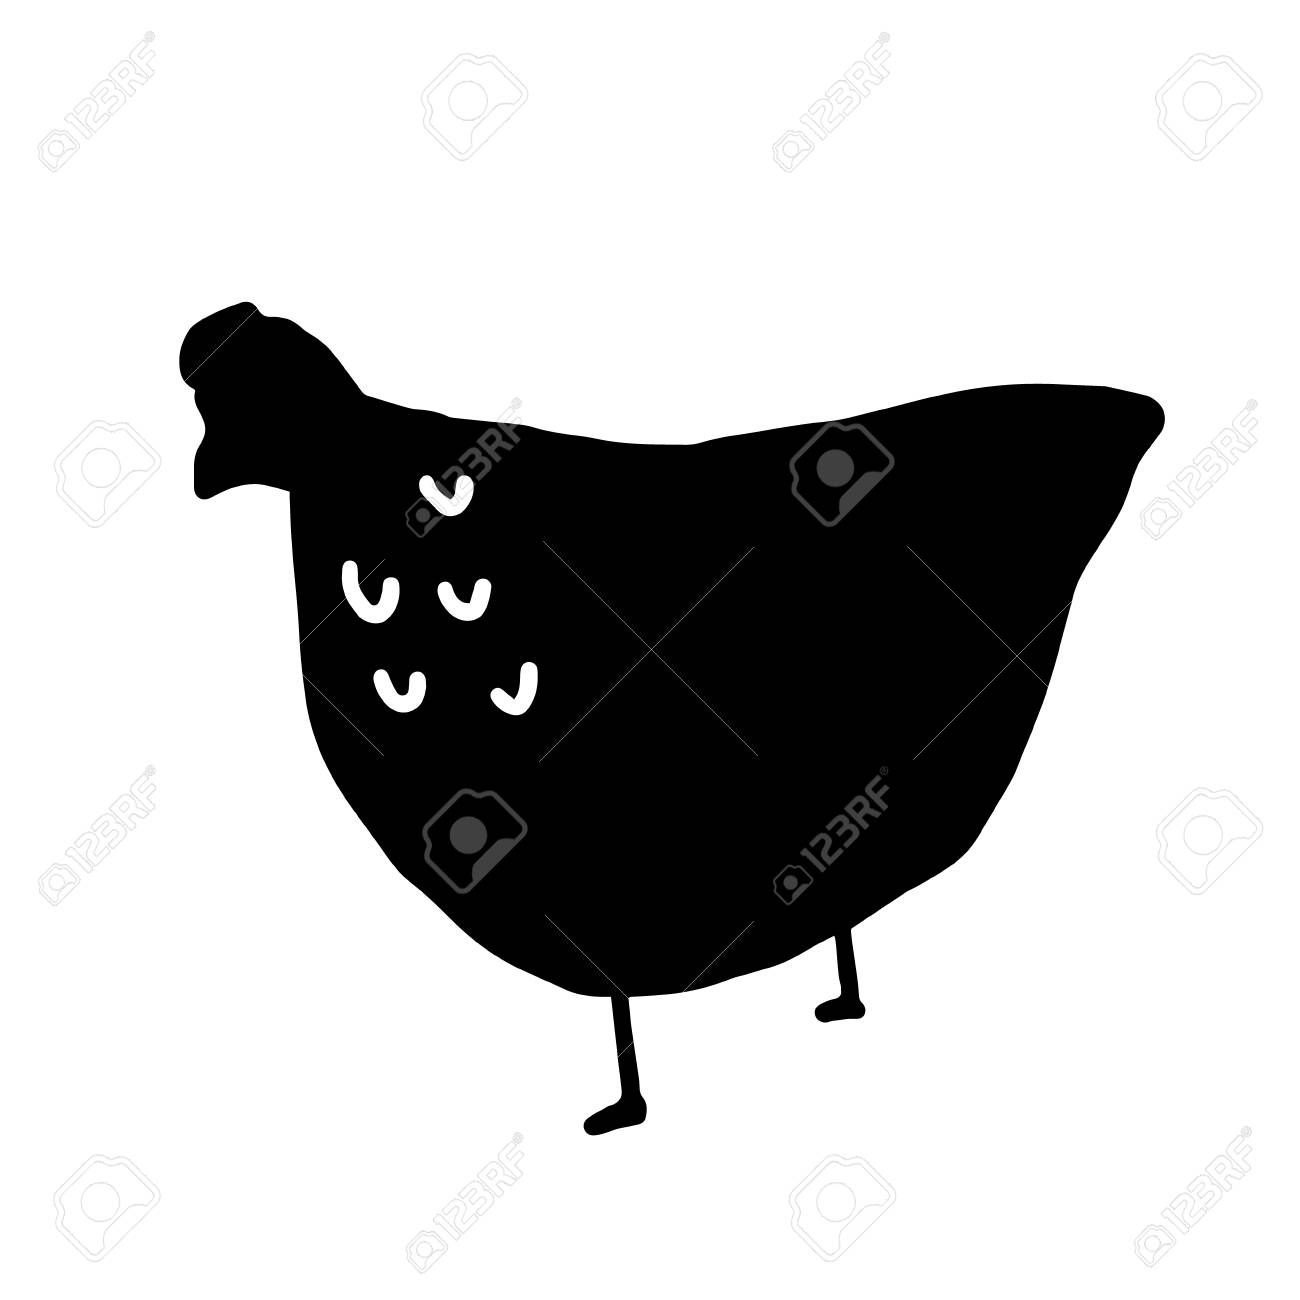 116413454-chicken-fat-cartoon-sign-isolated-black-vector-art-illustration.jpg